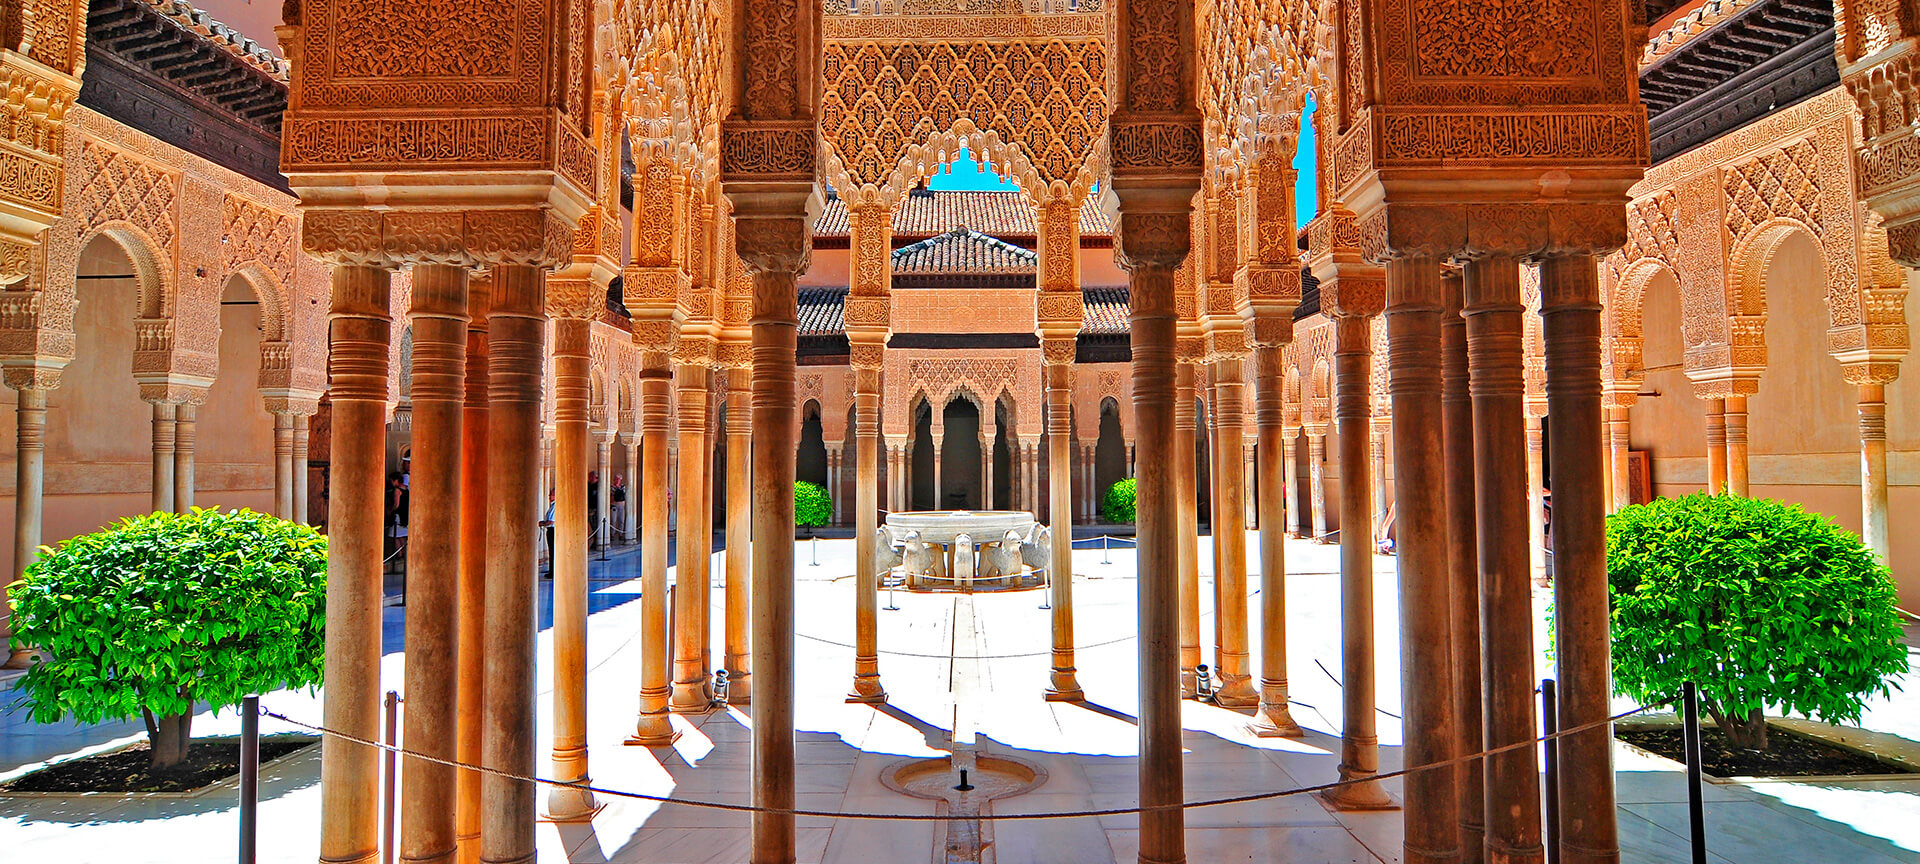 Arabische architectuur met zuilengang en decoraties.